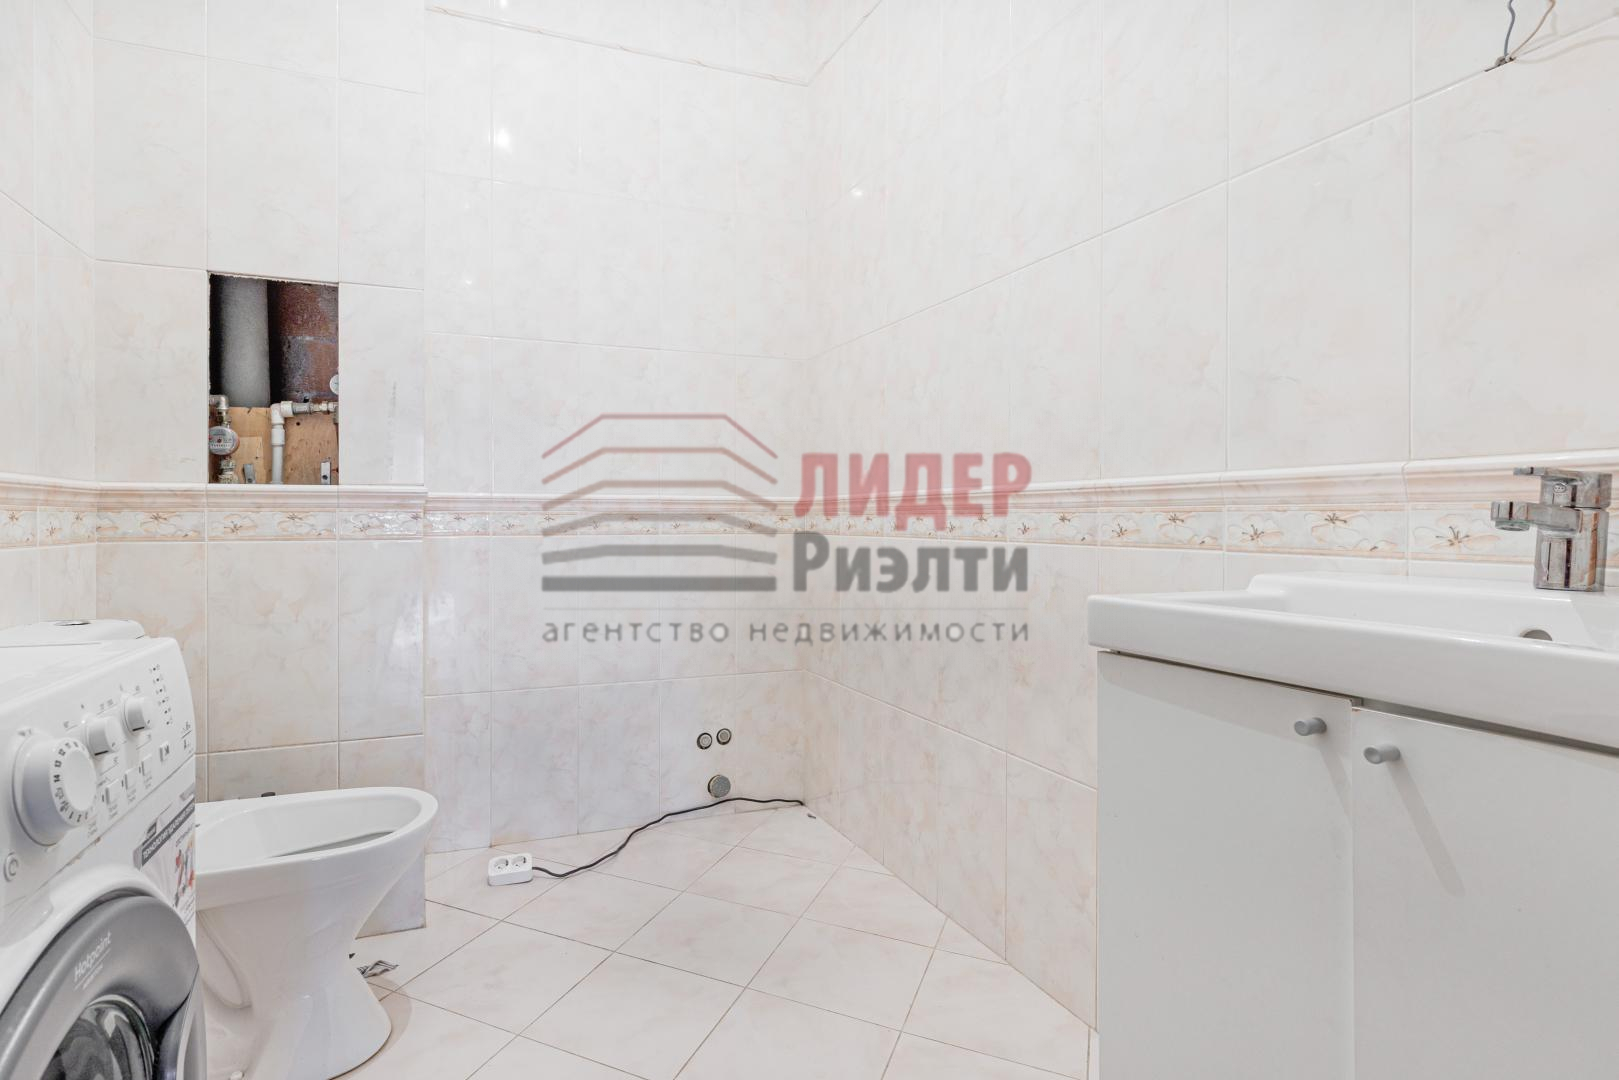 Продам квартиру в Москве по адресу Мичуринский проспект, 6к1, площадь 176 квм Недвижимость Москва (Россия)  Можно сделать свой дизайн, минимум работ